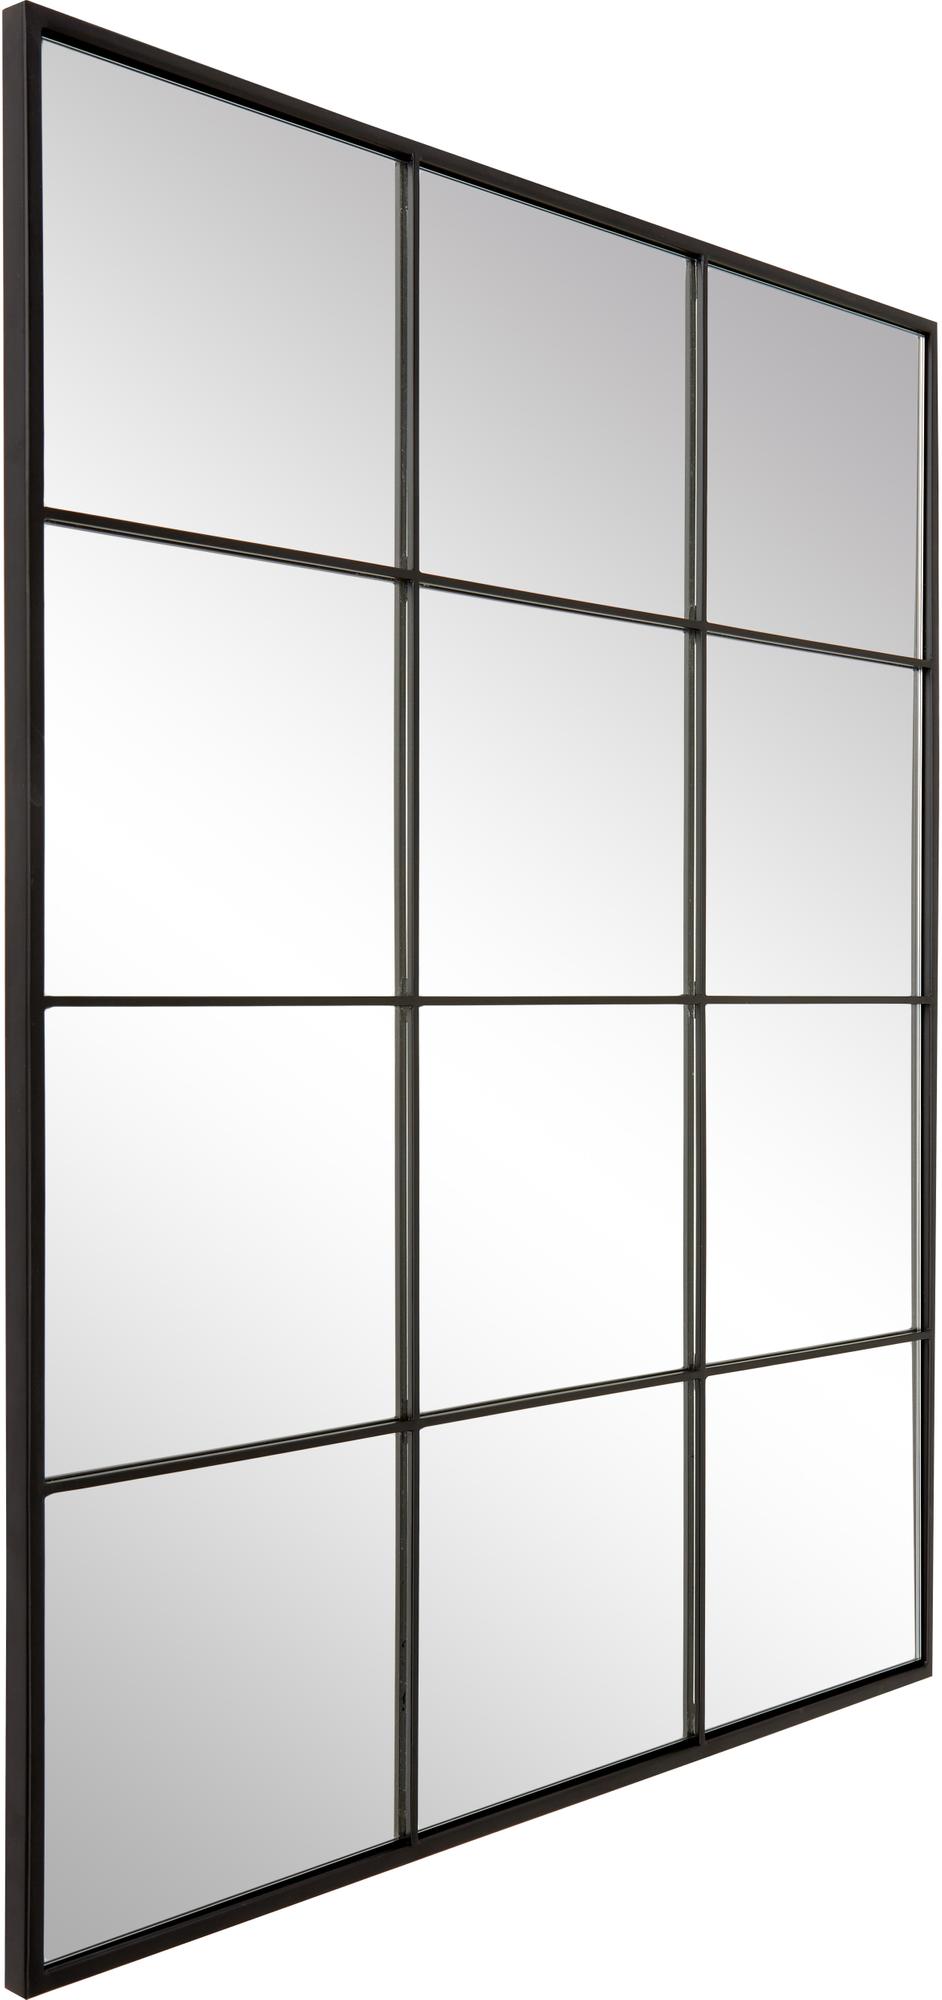 Newyorker spejle fremstillet af ægte stål med sort pulverlakeret finish. Stort spejl til gulvet eller væggen, kan hænges på begge led. Dette spejl er håndlavet.